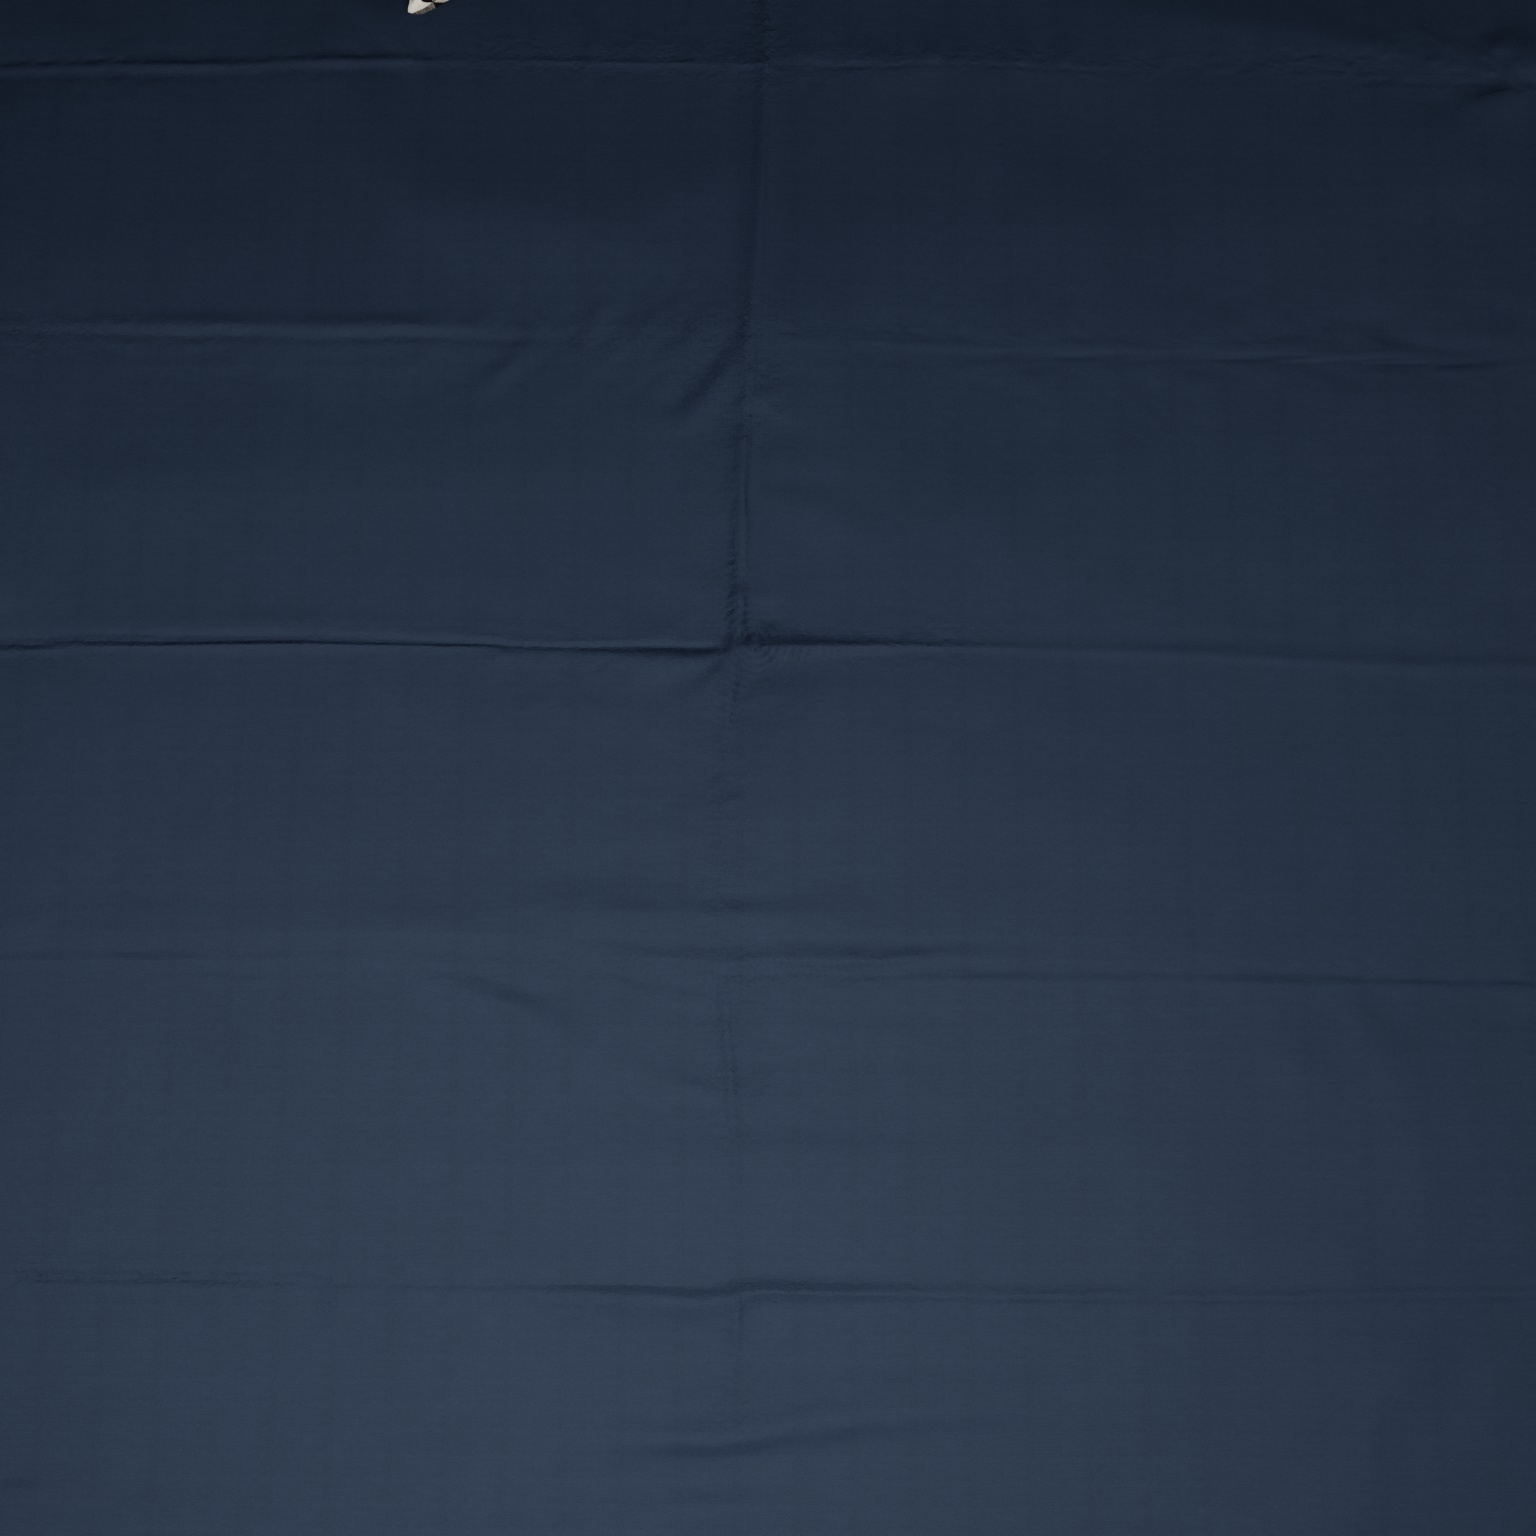 Bed sheet 6 test0000.jpg